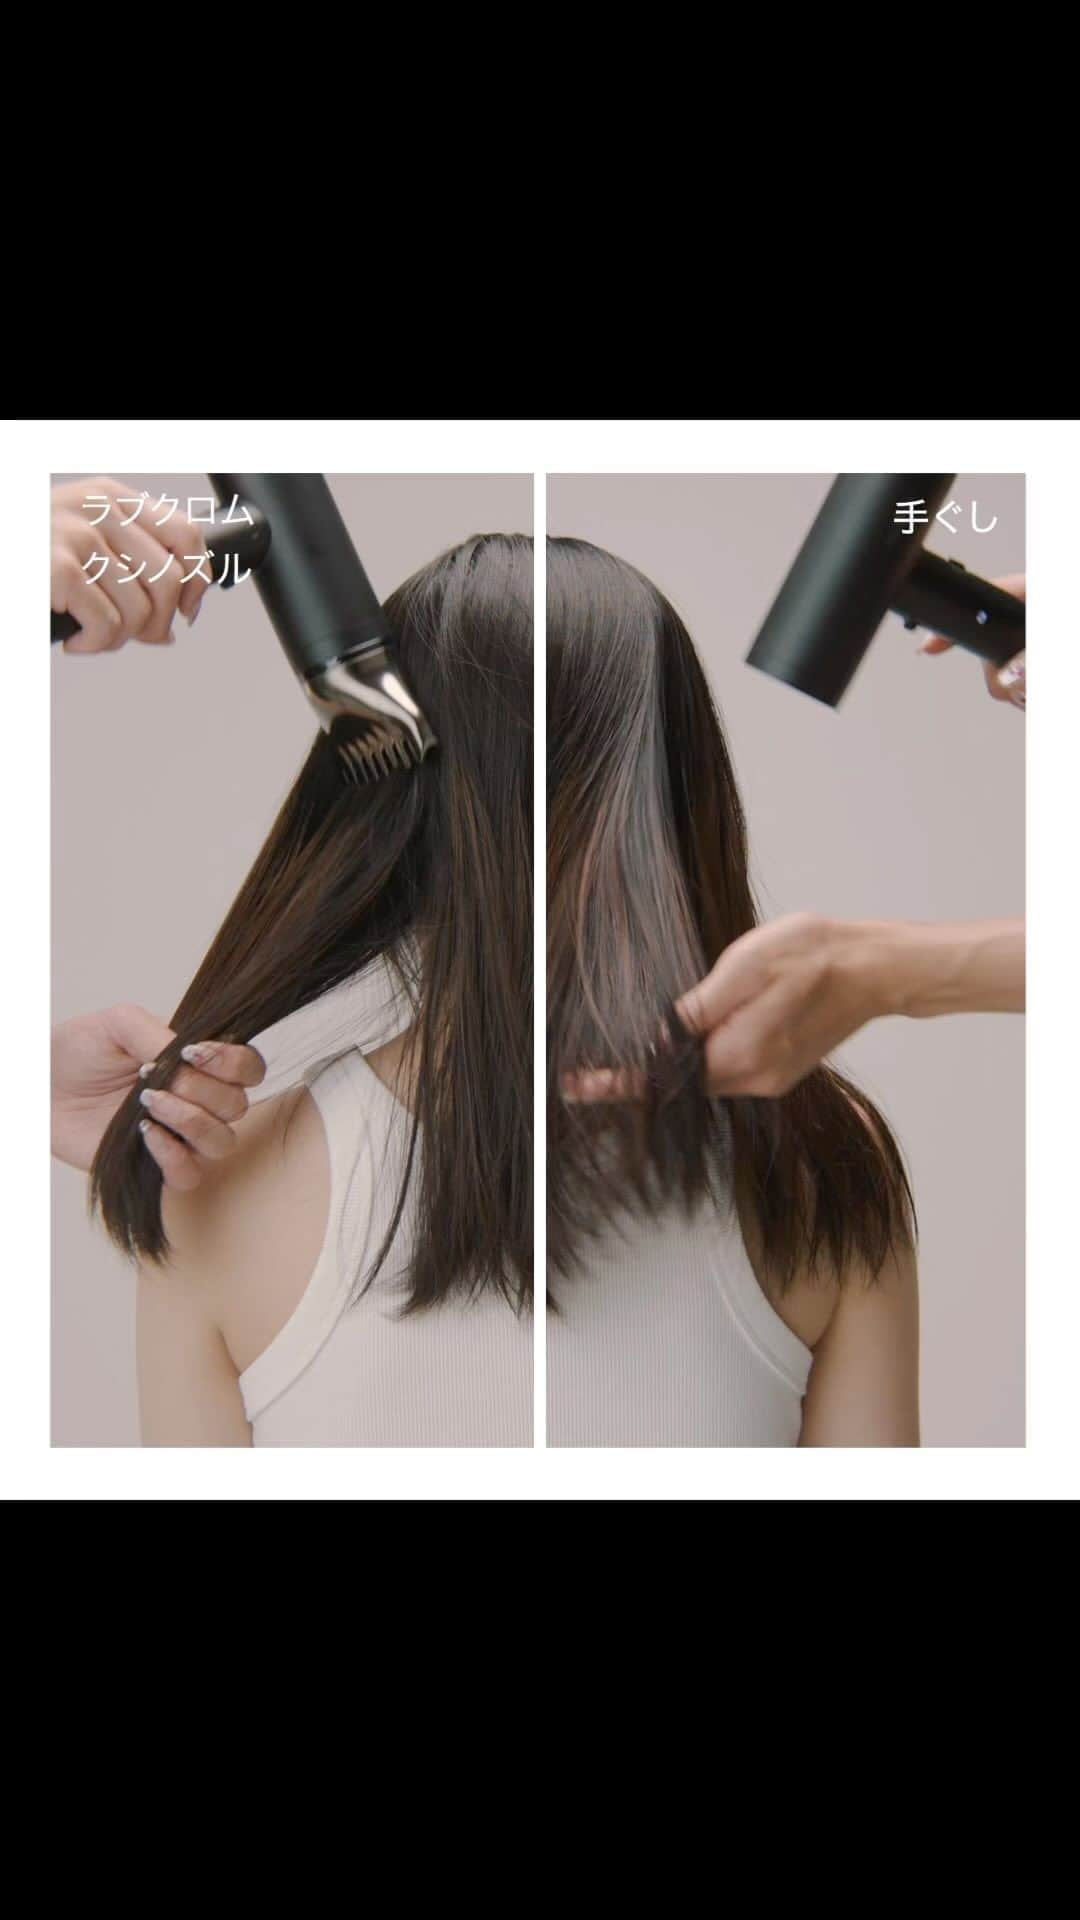 モッズ・ヘア スタイリングツールのインスタグラム：「ラブクロムノズルVS手ぐし実験  ラブクロムノズルと手ぐしを使って髪の仕上がりの比較。  ラブクロムクシノズルを使用すると、広がりが収まりまとまりのある髪に。 髪の毛もサラサラでまるでサロン帰りのようなヘアスタイルに仕上がります。  毎日使うヘアドライヤー、サラサラのヘアドライヤーで毎日をハッピーにお過ごしください。  ▷プリヴィレージュ LA BEAUTÉ (ラ・ボーテ)(MHD-1210) #MHD1210 ■高風速を実現する新モーター採用 （風速：33.6m/s） ■LOVE CHROMEとコラボ「クシノズル」付属 　ツヤのあるなめらかなワンランク上の仕上がりに* 　*髪のツヤ約10%UP※1※2 　*髪のなめらかさ約58%UP※1※3 ■無段階 風速調節スイッチ ■マイナスイオン搭載 ■お手入れカンタンフィルター ■オリジナルポーチ サイズ：約 195 x 85 x 189 mm （ノズル装着時）/約 130 x 54 x 189mm （ノズル未装着時） 重量： 約 492g （ノズル装着時）/約 442g （ノズル未装着時） https://www.mods-stylingtools.com/products/mhd-1210 ※ノズル未装着時時 ※1 第三者機関調べ ※2 手ぐしとラブクロムクシノズルでブローした場合の毛髪光沢度を計測 ※3 使用前比較  #modshair #modshairstylingtools #モッズヘア #モッズヘアスタイリングツール #ヘアスタイル #ヘアセット #スタイリング #ヘア用品 #ヘアアレンジ #ヘアアイテム #hair #美しい髪 #速乾 #早く乾く #まとまり #ドライヤー #ラブクロム#lovechrome#コラボ#美髪#サラサラ#ツヤ#ツヤ髪#サロン帰りをお家でも #news#new#新製品#新商品#新発売」